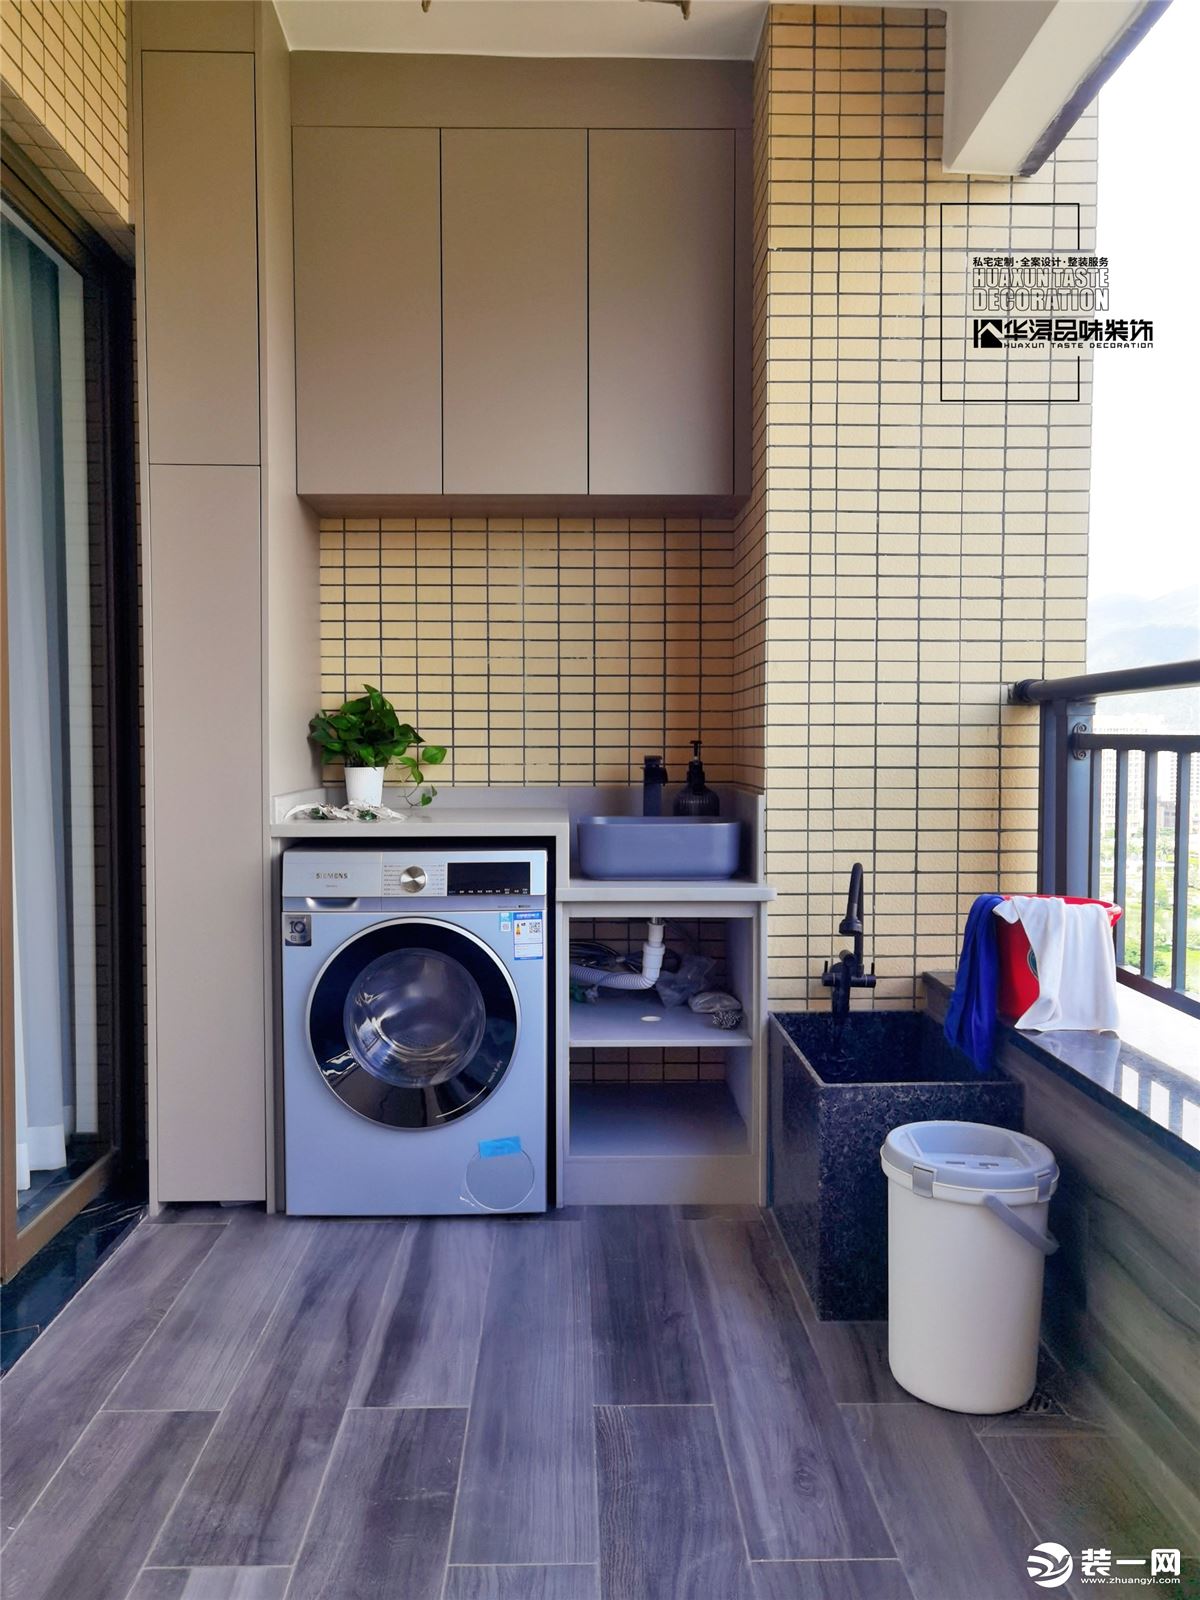 阳台放置洗衣机，对晾晒更方便，上面增加了一个储物柜方便收纳